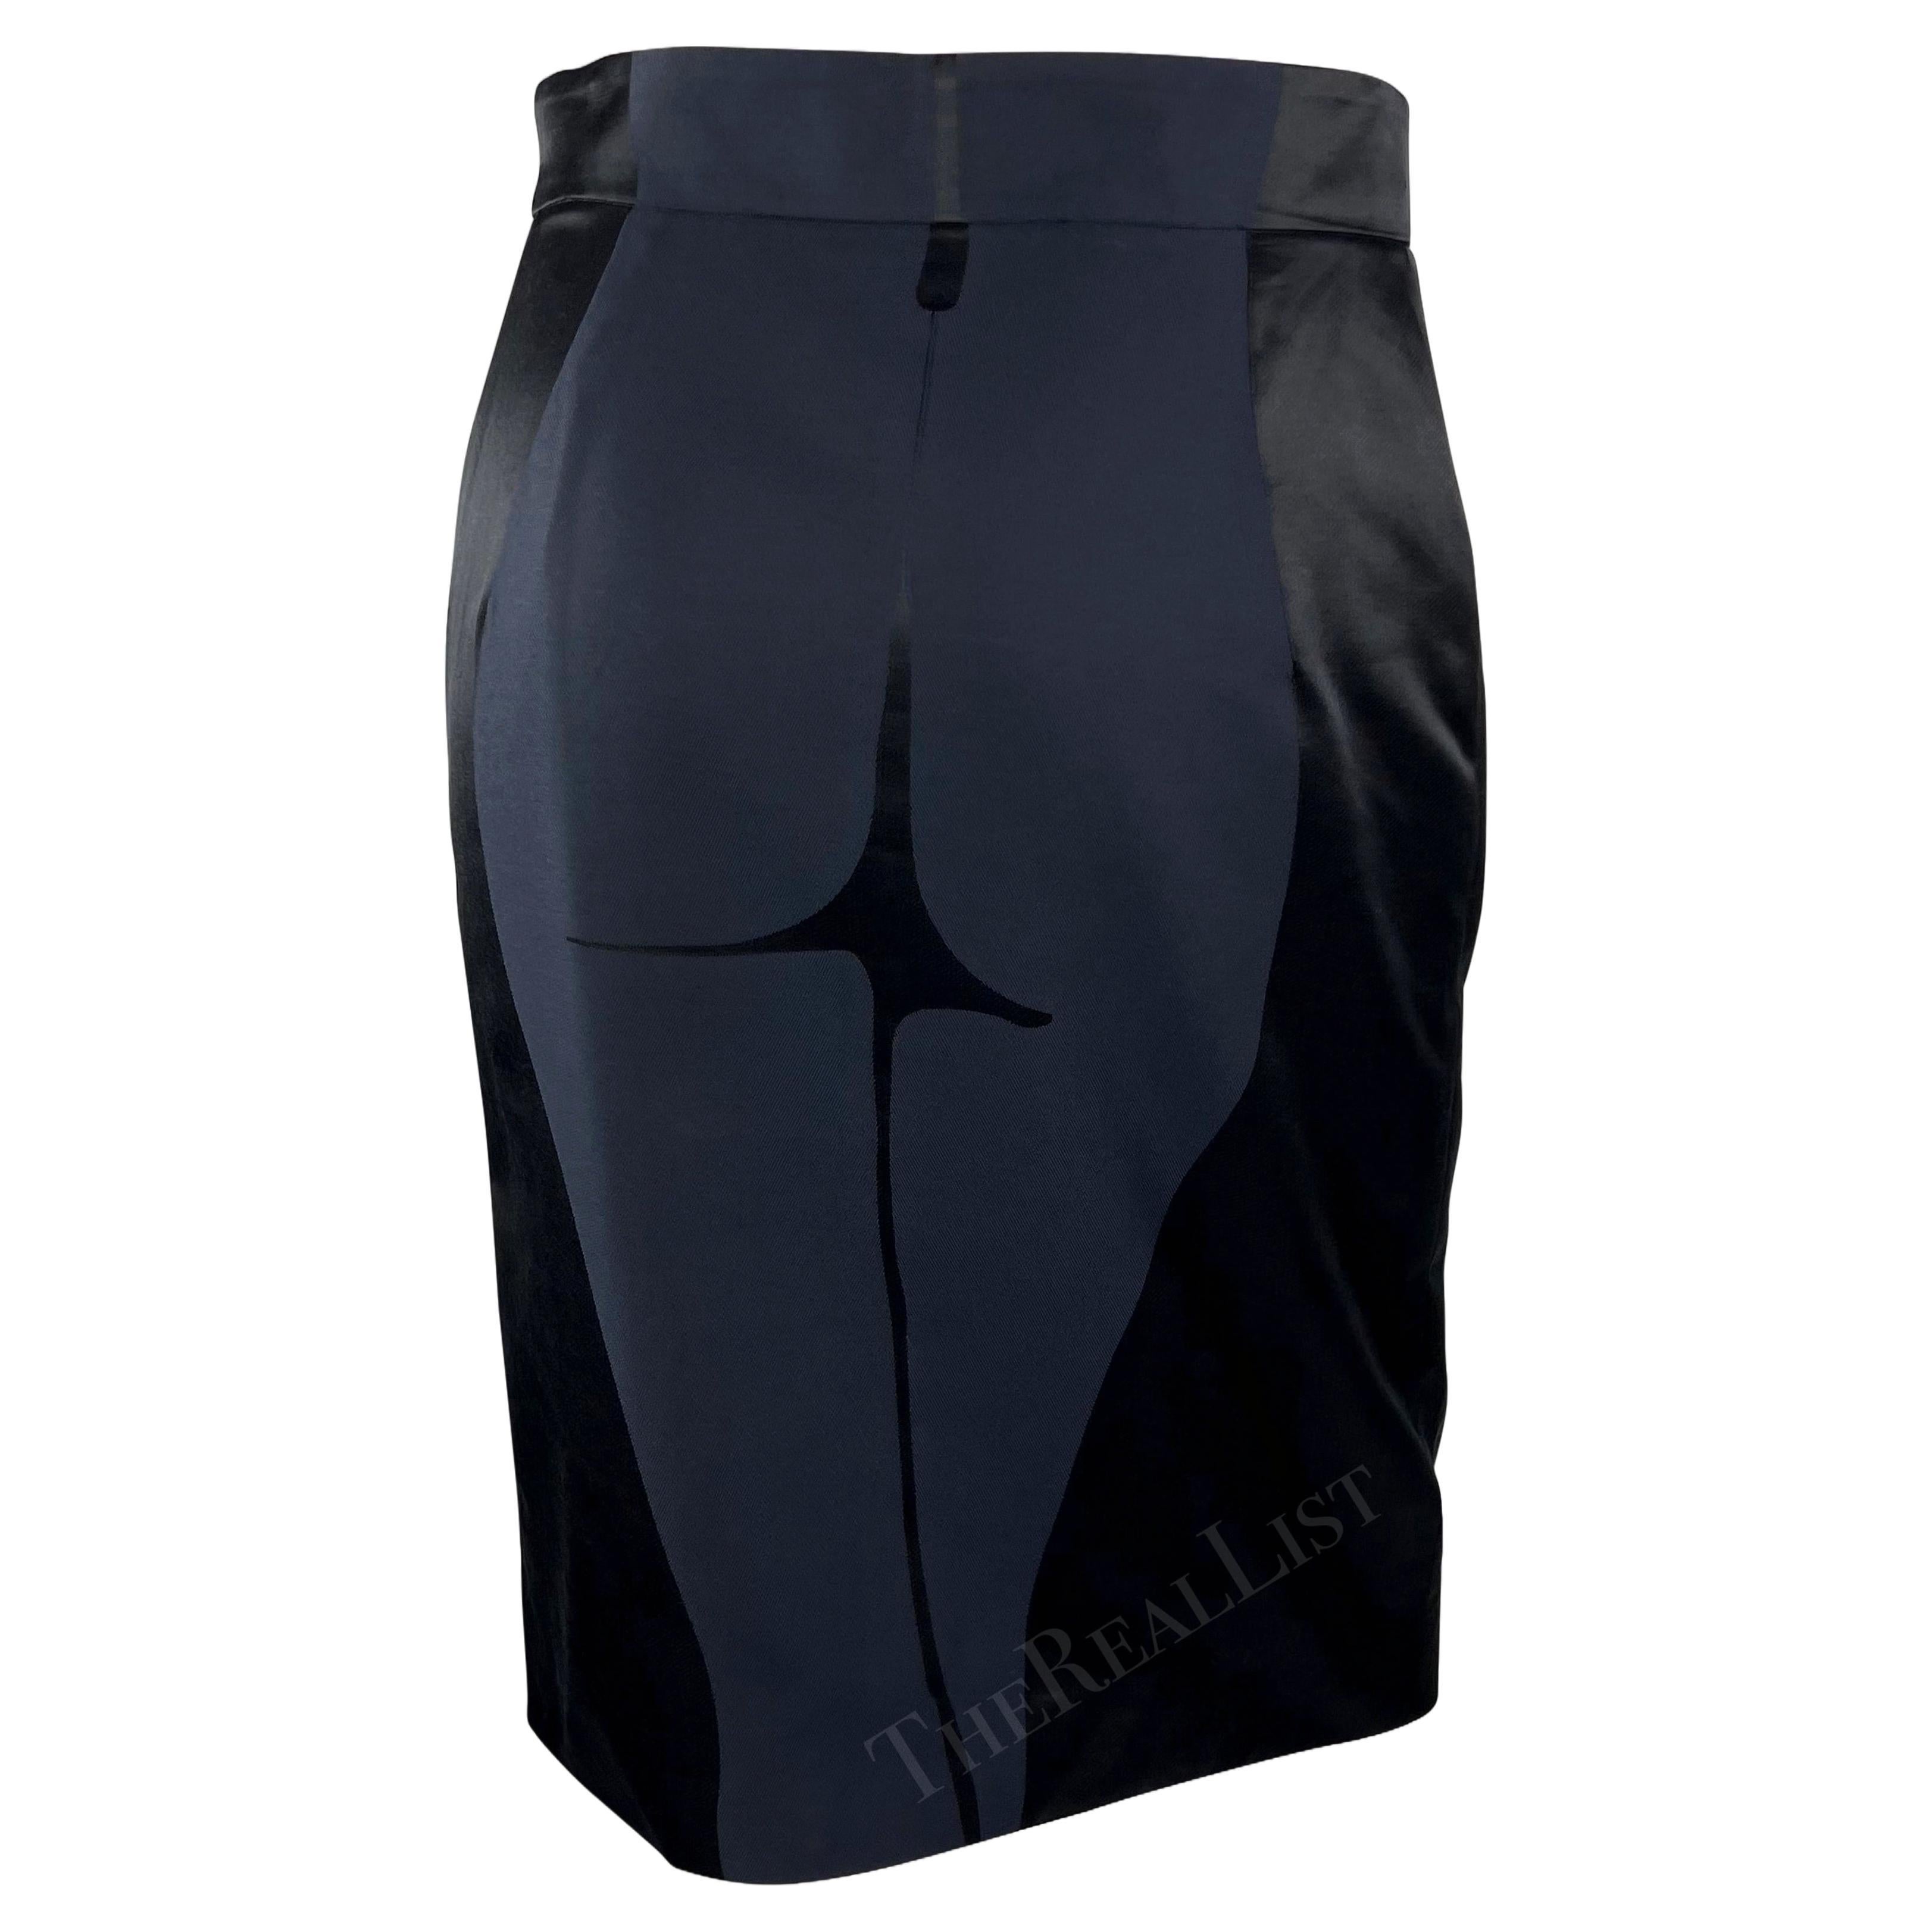 S/S 2003 Yves Saint Laurent by Tom Ford Female Body Print Runway Skirt For Sale